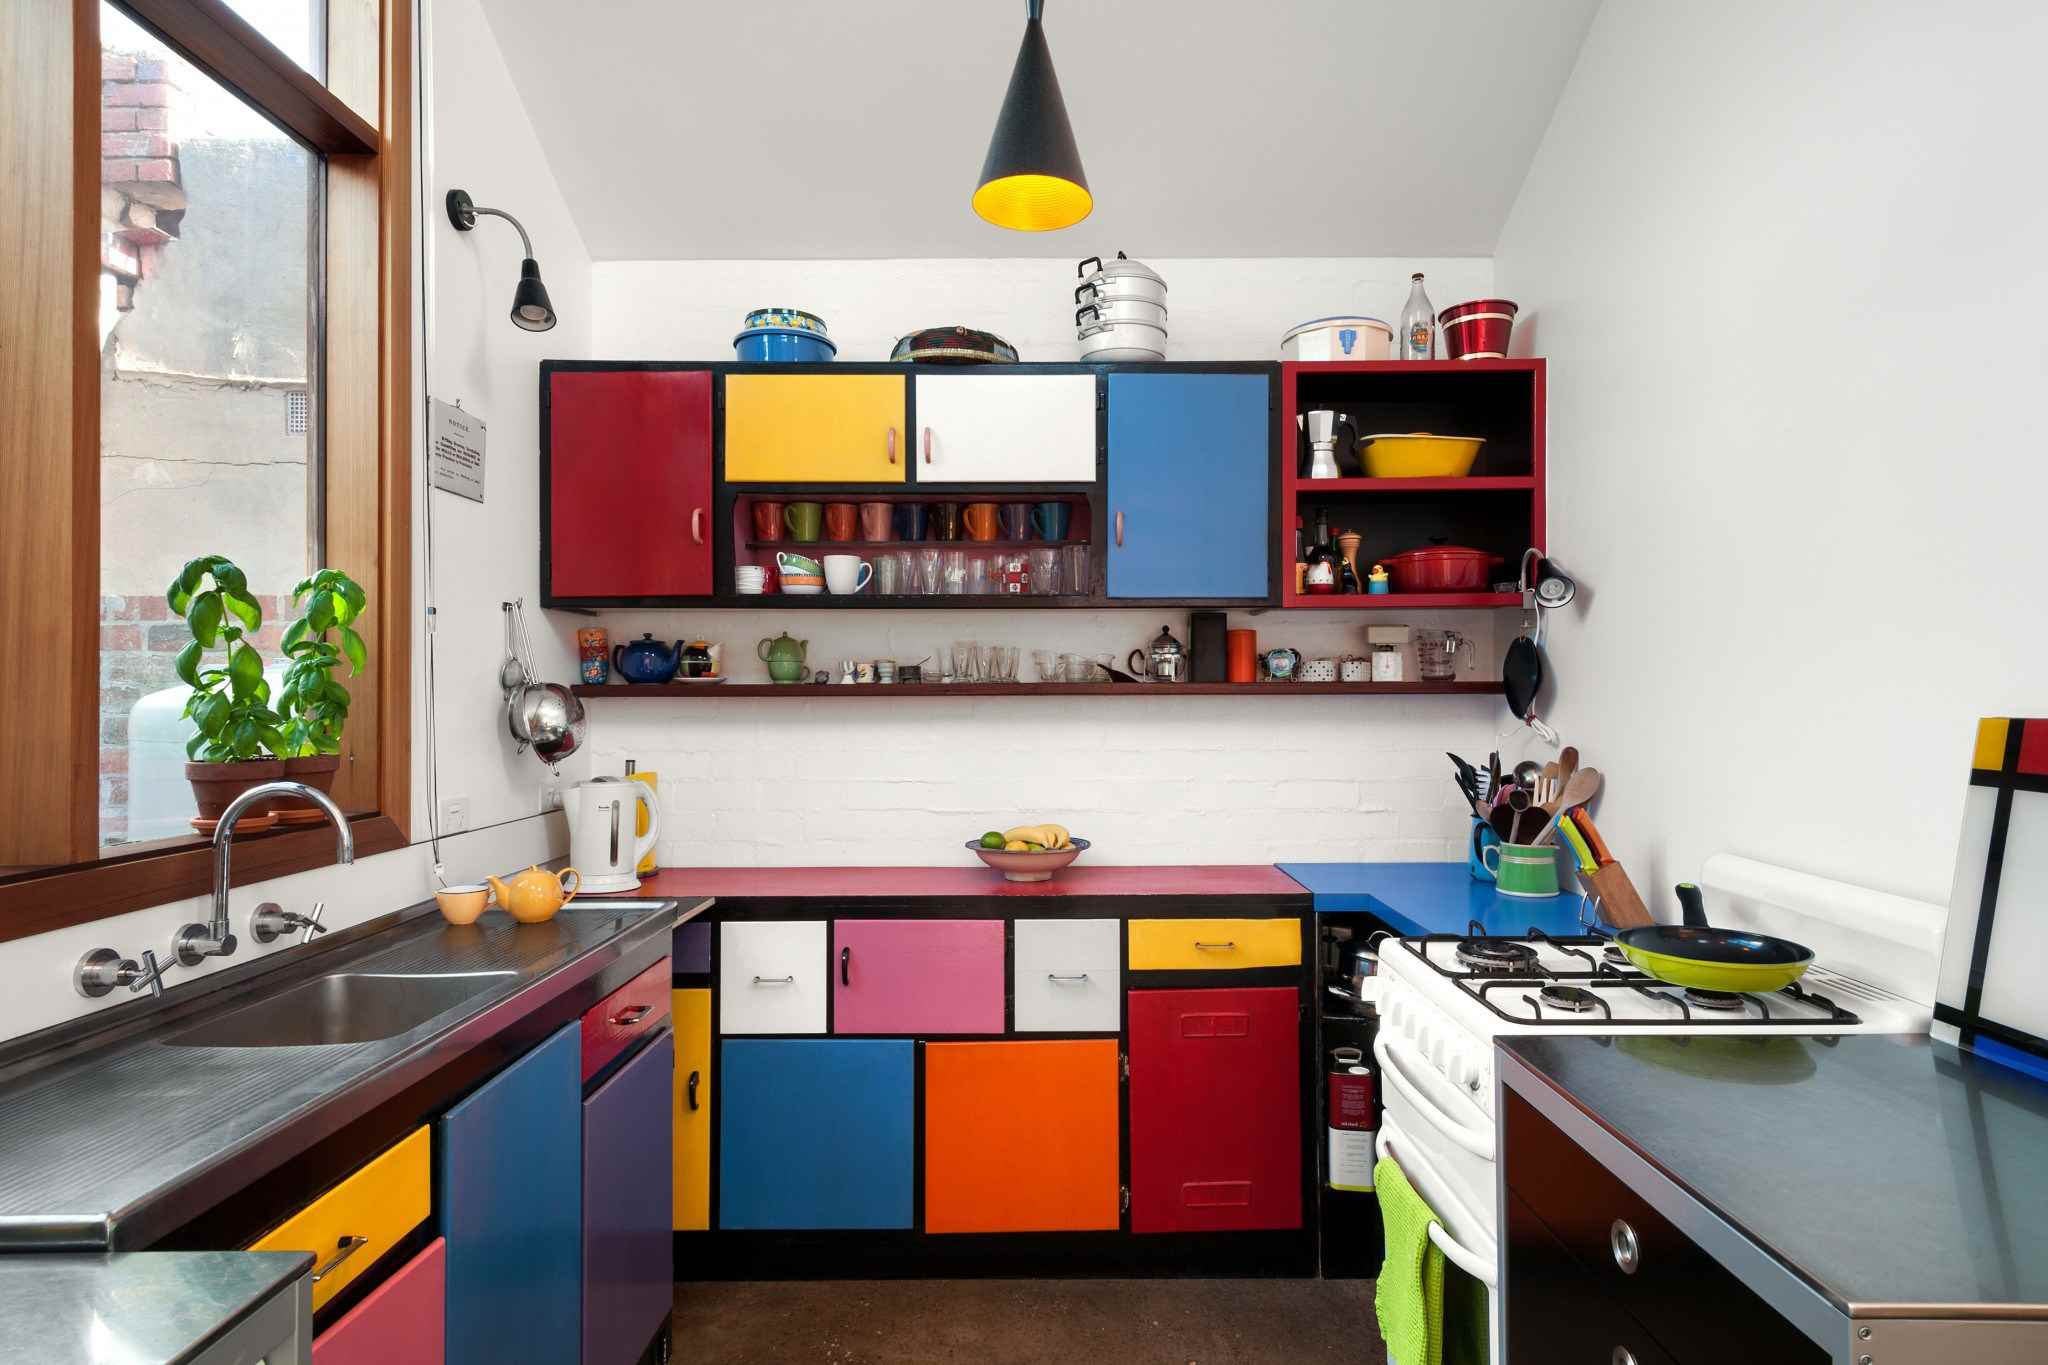 Colorful Kitchen Ideas: 13 Designer Ways To Brighten A Kitchen